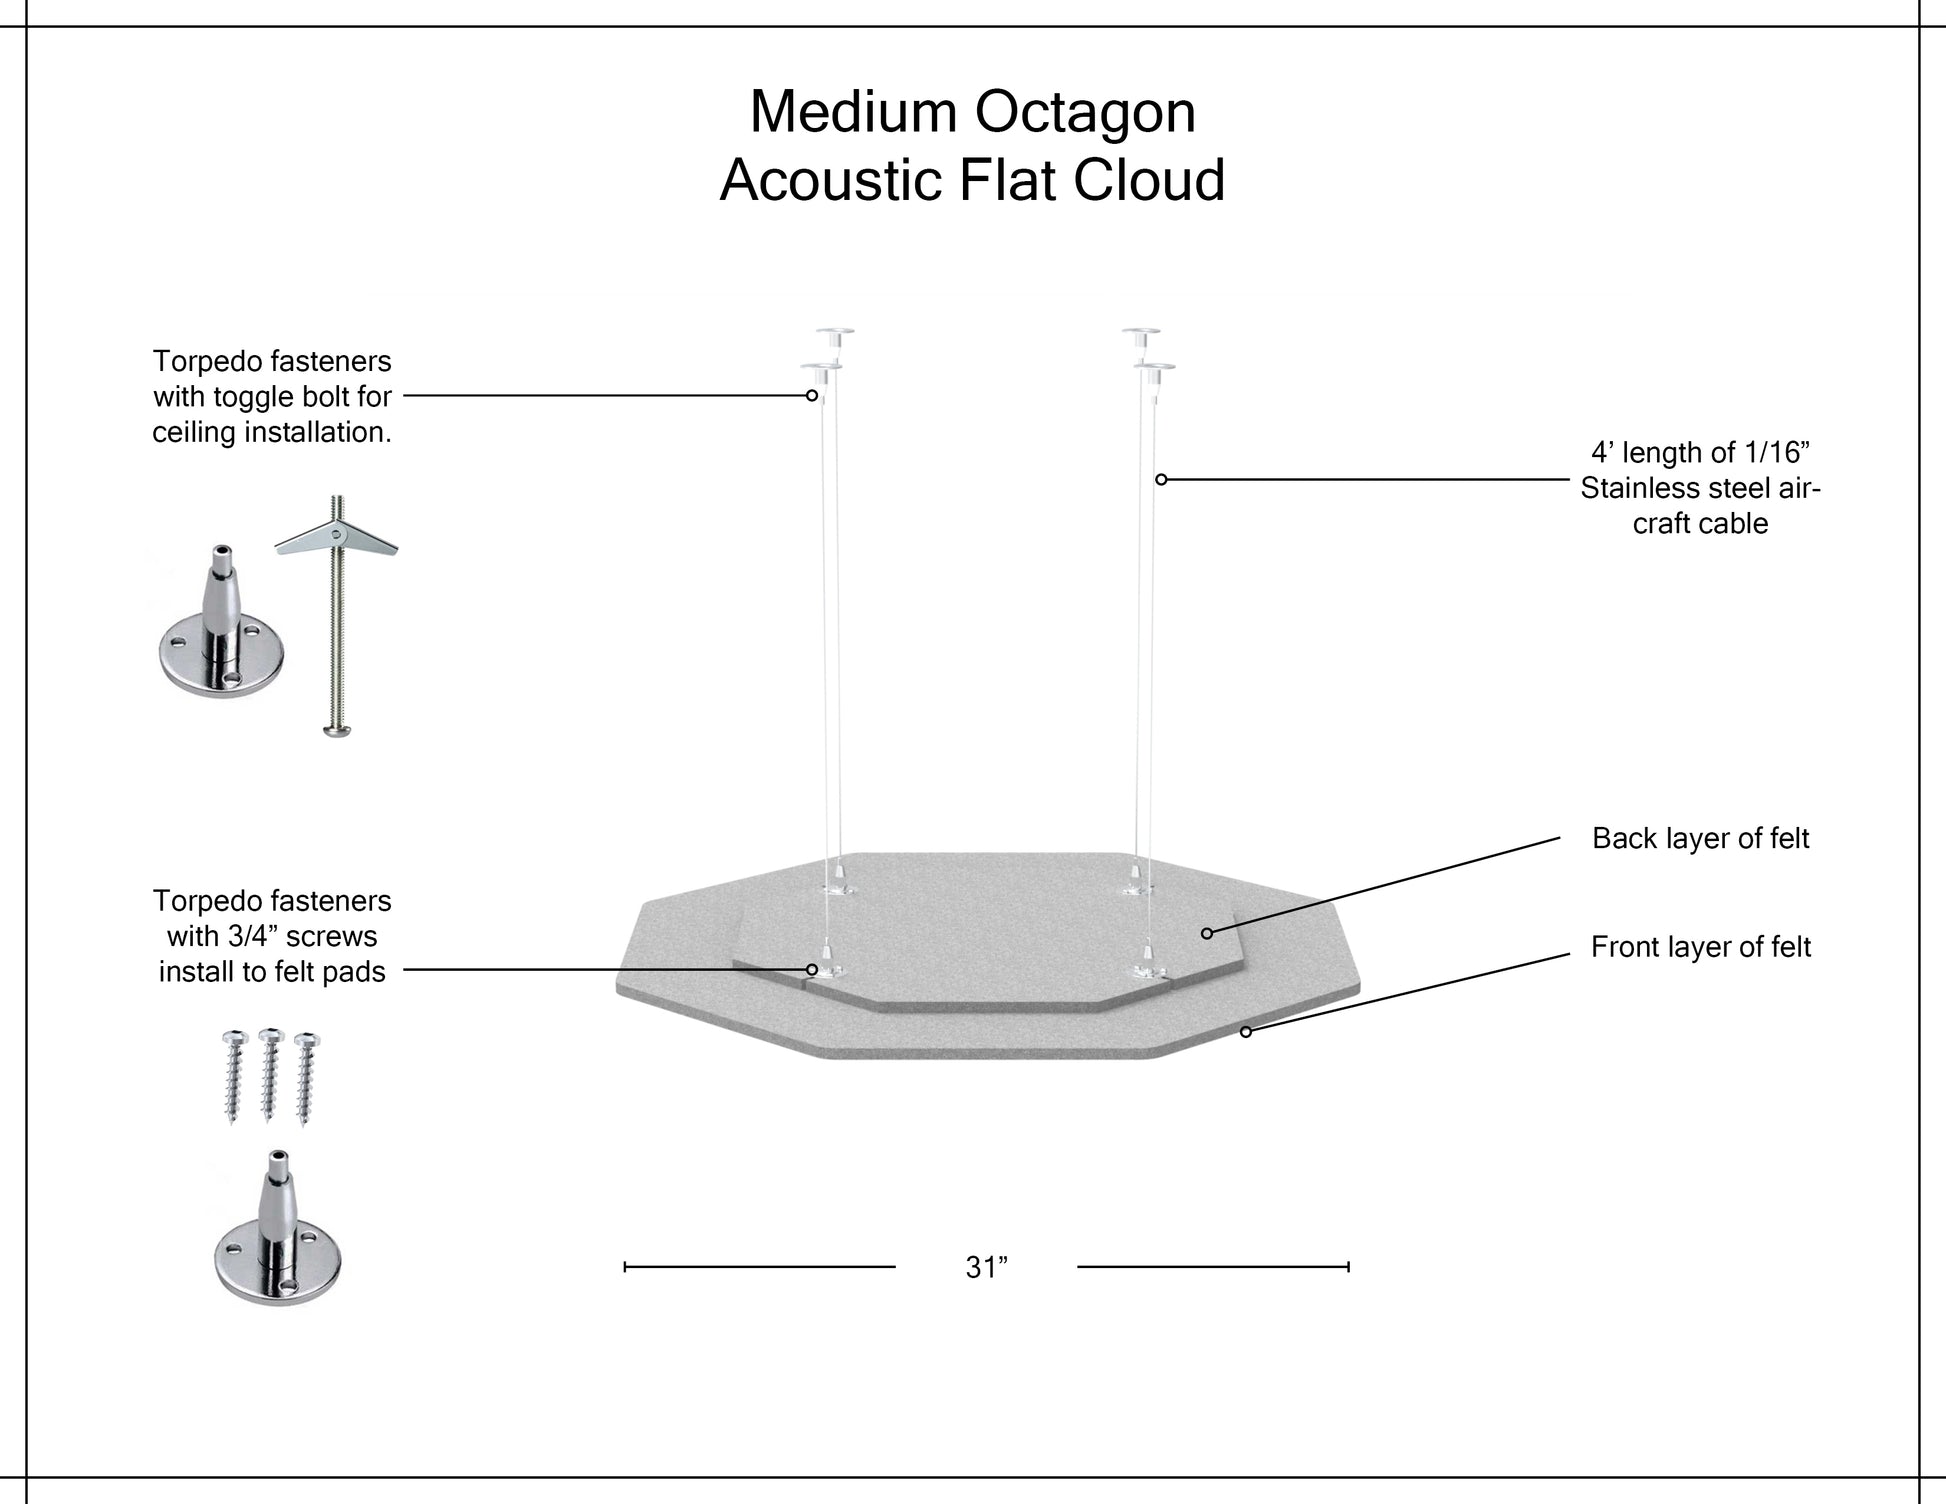 Medium Octagon Acoustic Flat Cloud